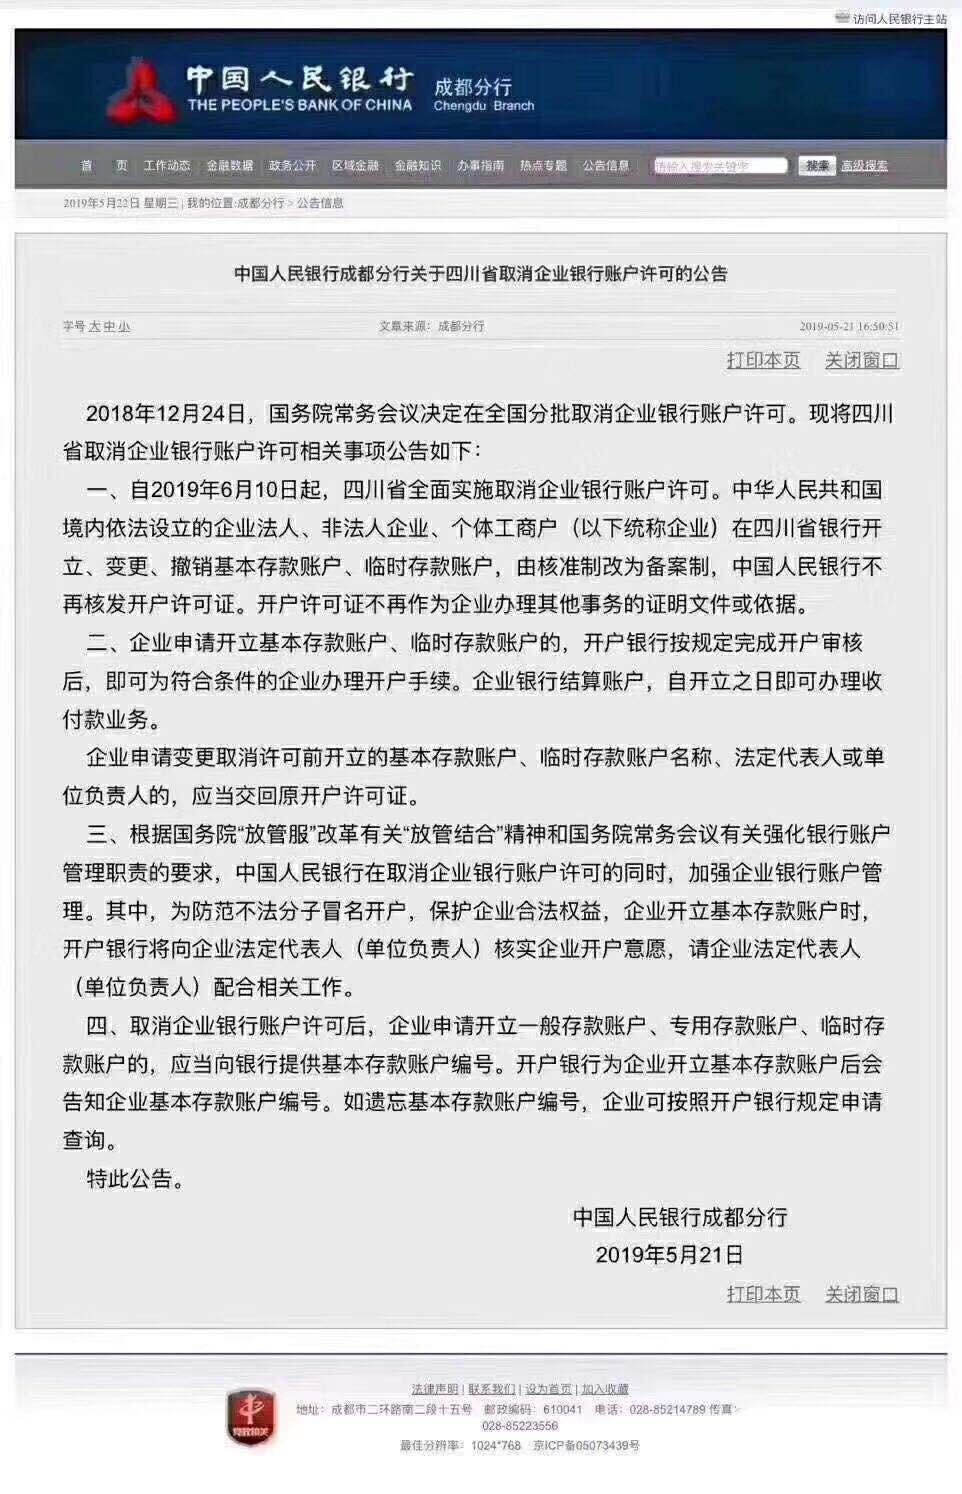 中国人民银行成都分行关于四川省取消企业银行账户许可的公告